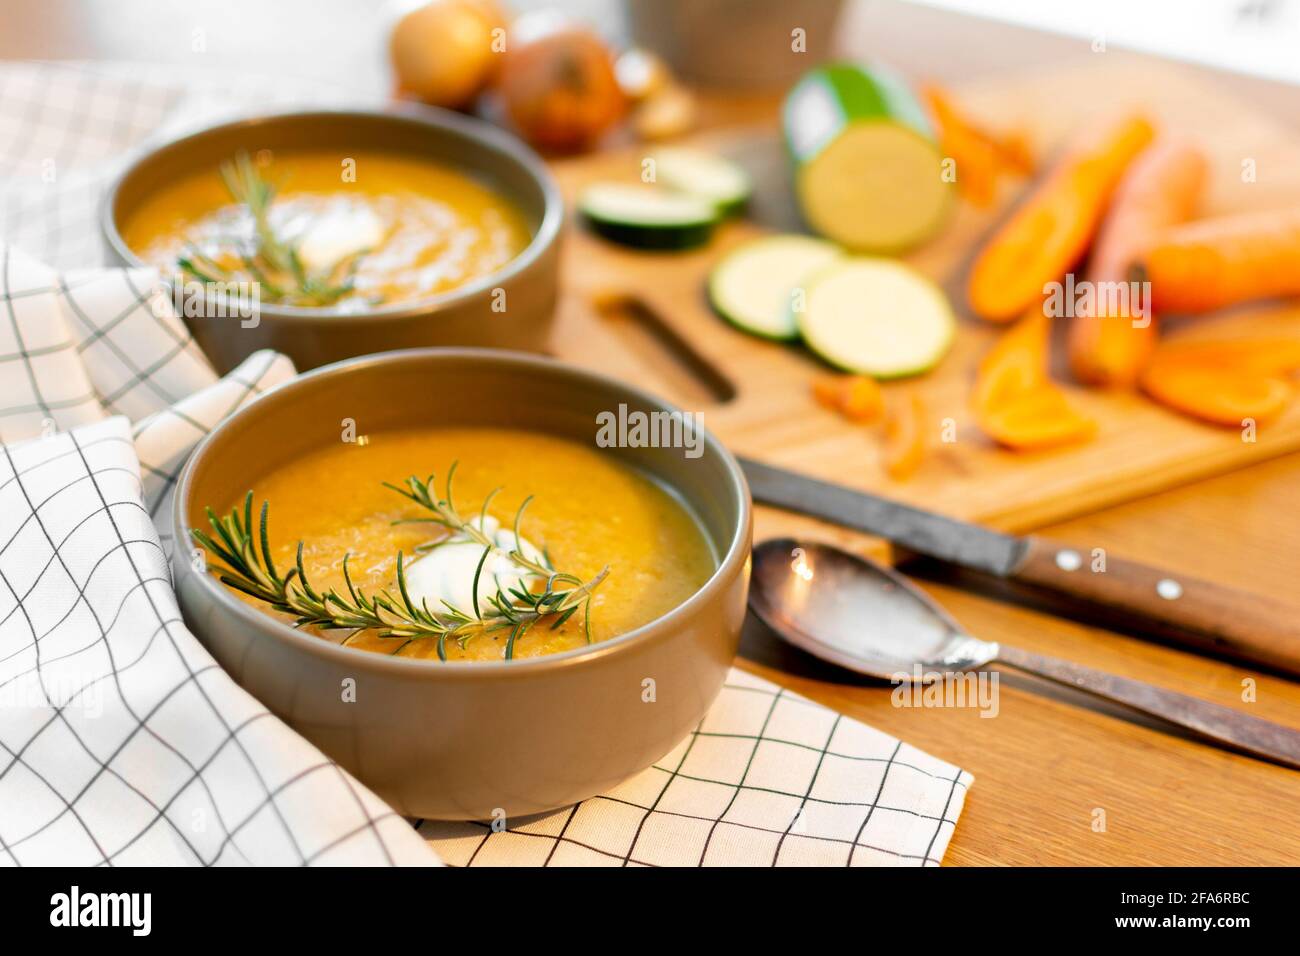 Un bel pasto casalinga contenente una zuppa di verdure fresche con carote e zucchine e cipolle servite su un vecchio tavolo di legno con molta guarnitura. Foto Stock